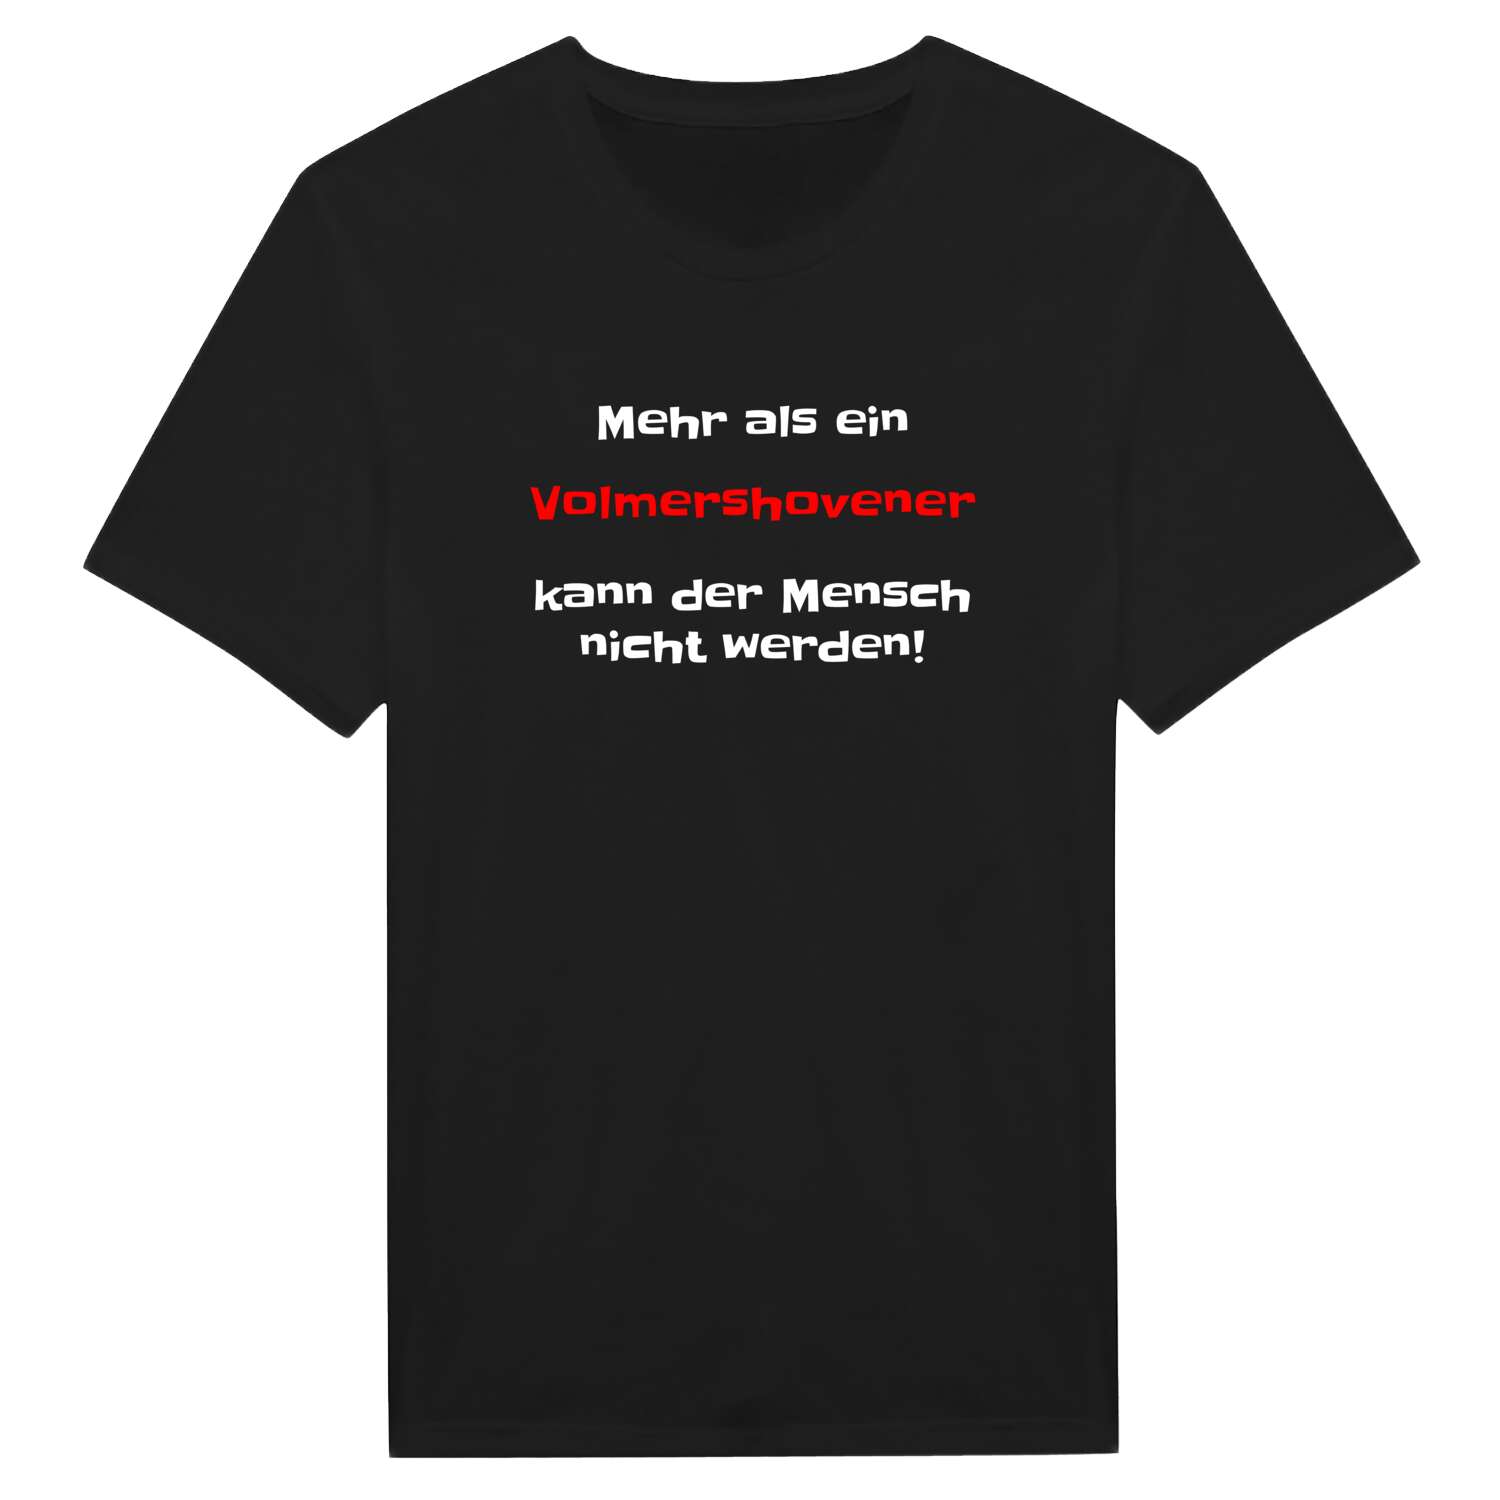 Volmershoven T-Shirt »Mehr als ein«